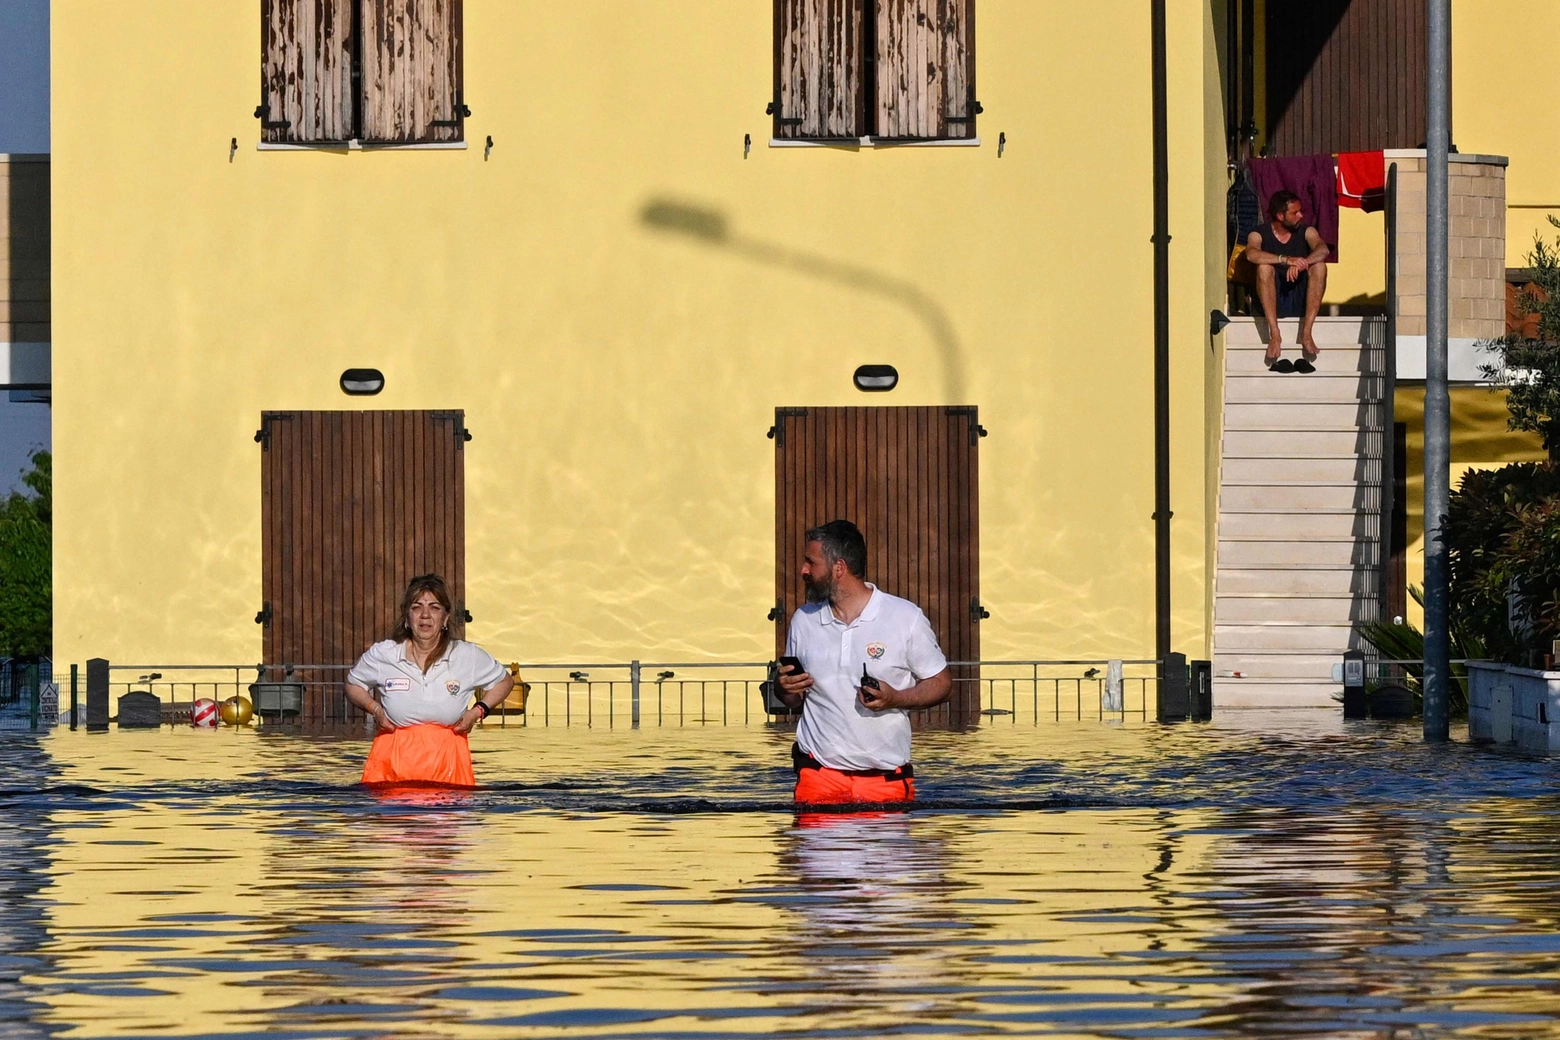 Alluvione in Romagna: Conselice (Ravenna), ancora sott'acqua. La rabbia dei cittadini